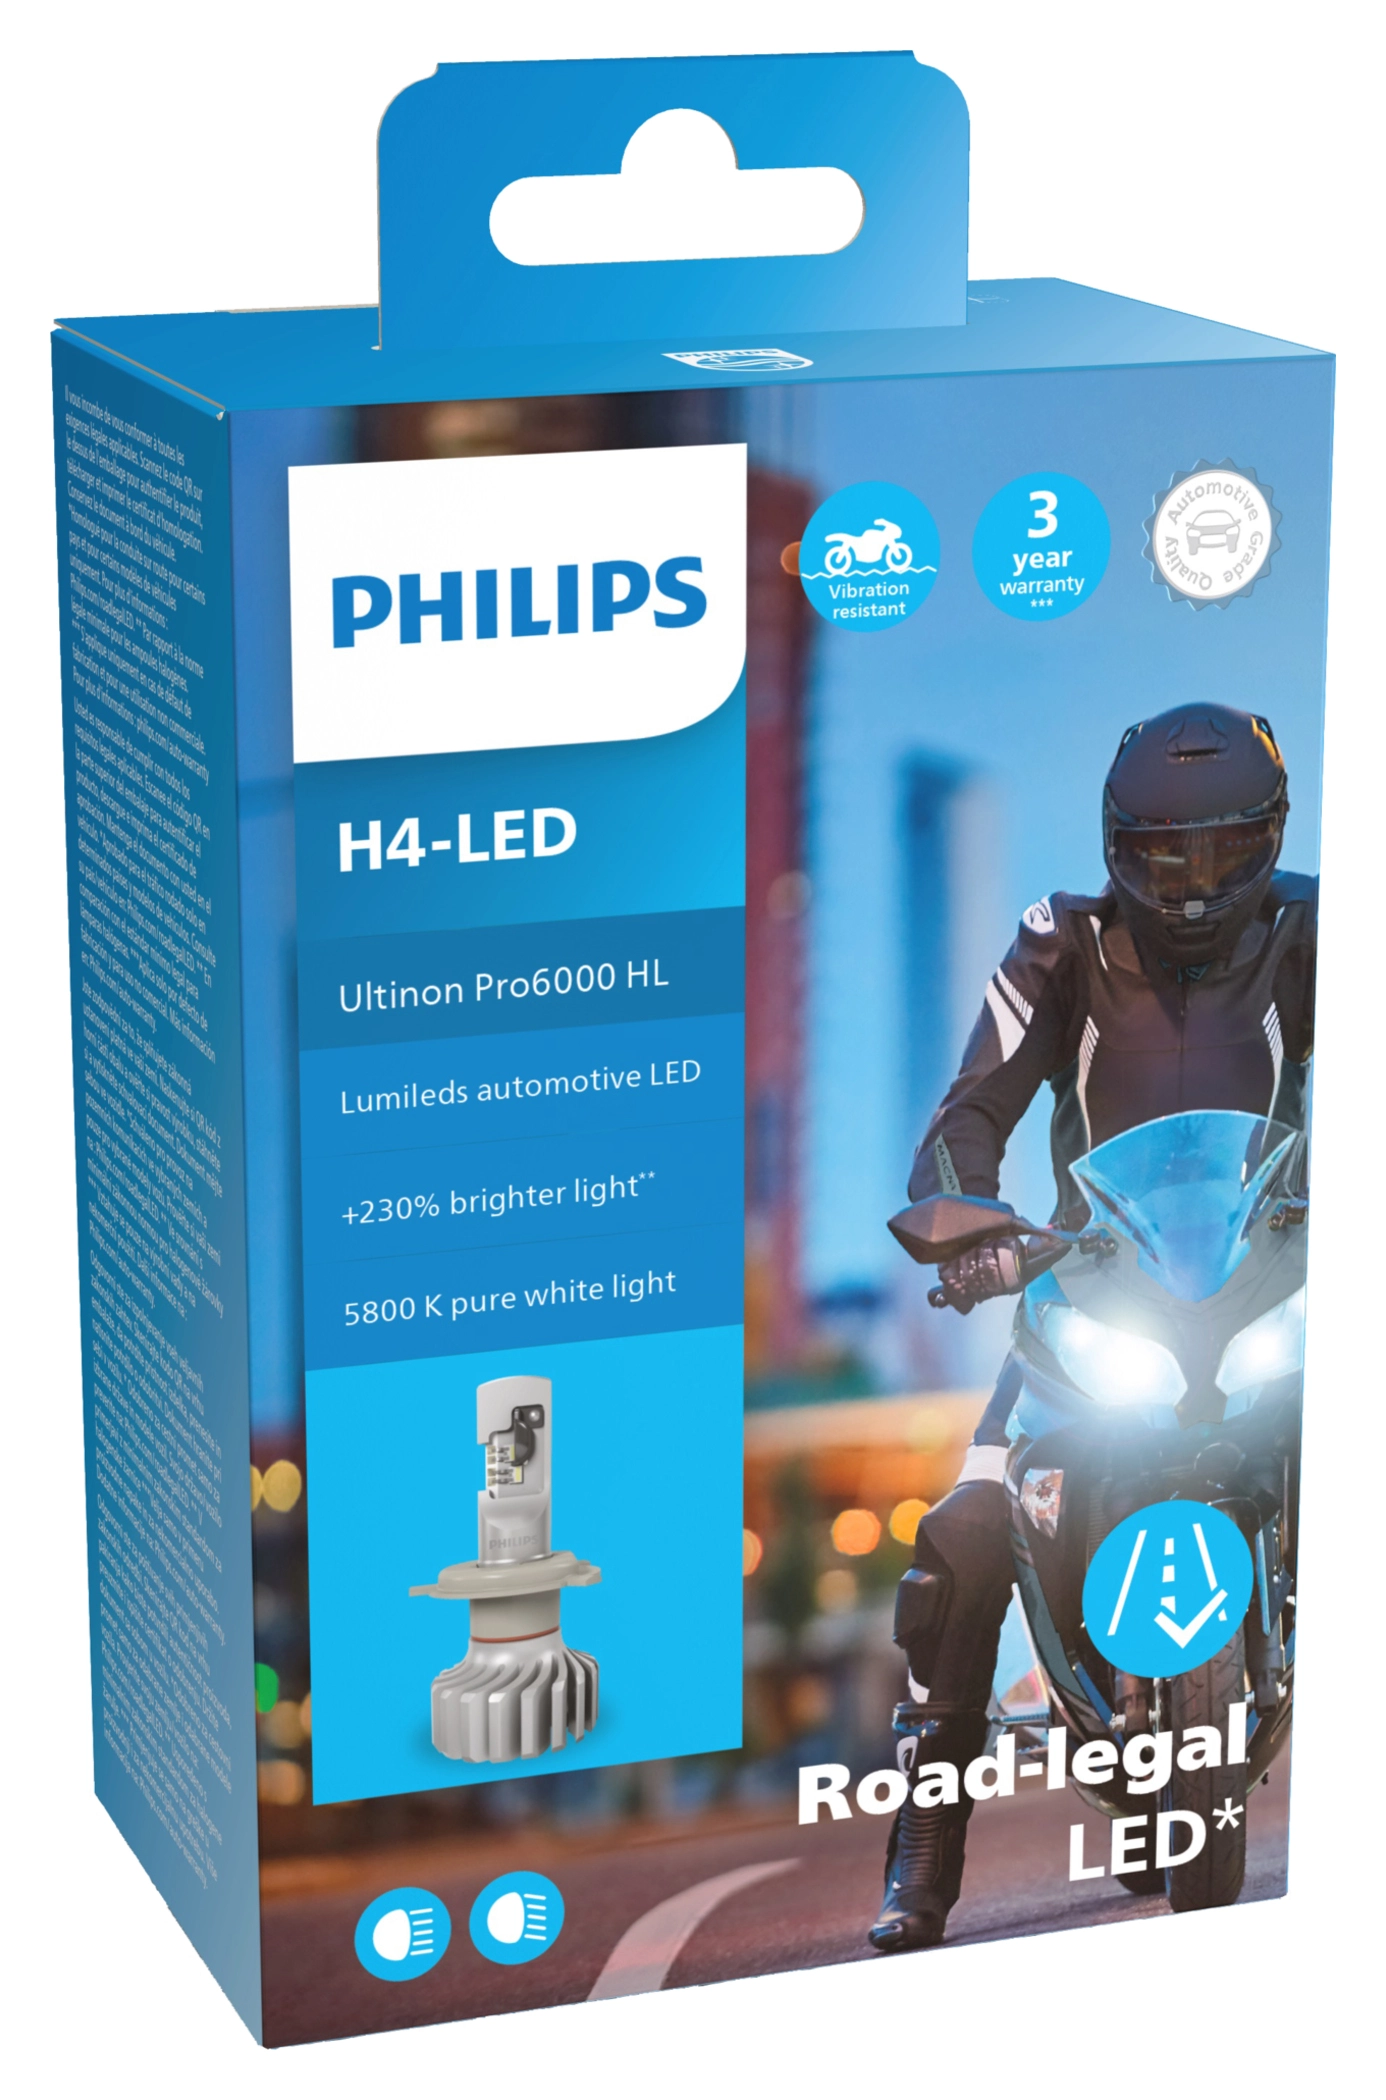 Philips H4-LED 18W a buon prezzo